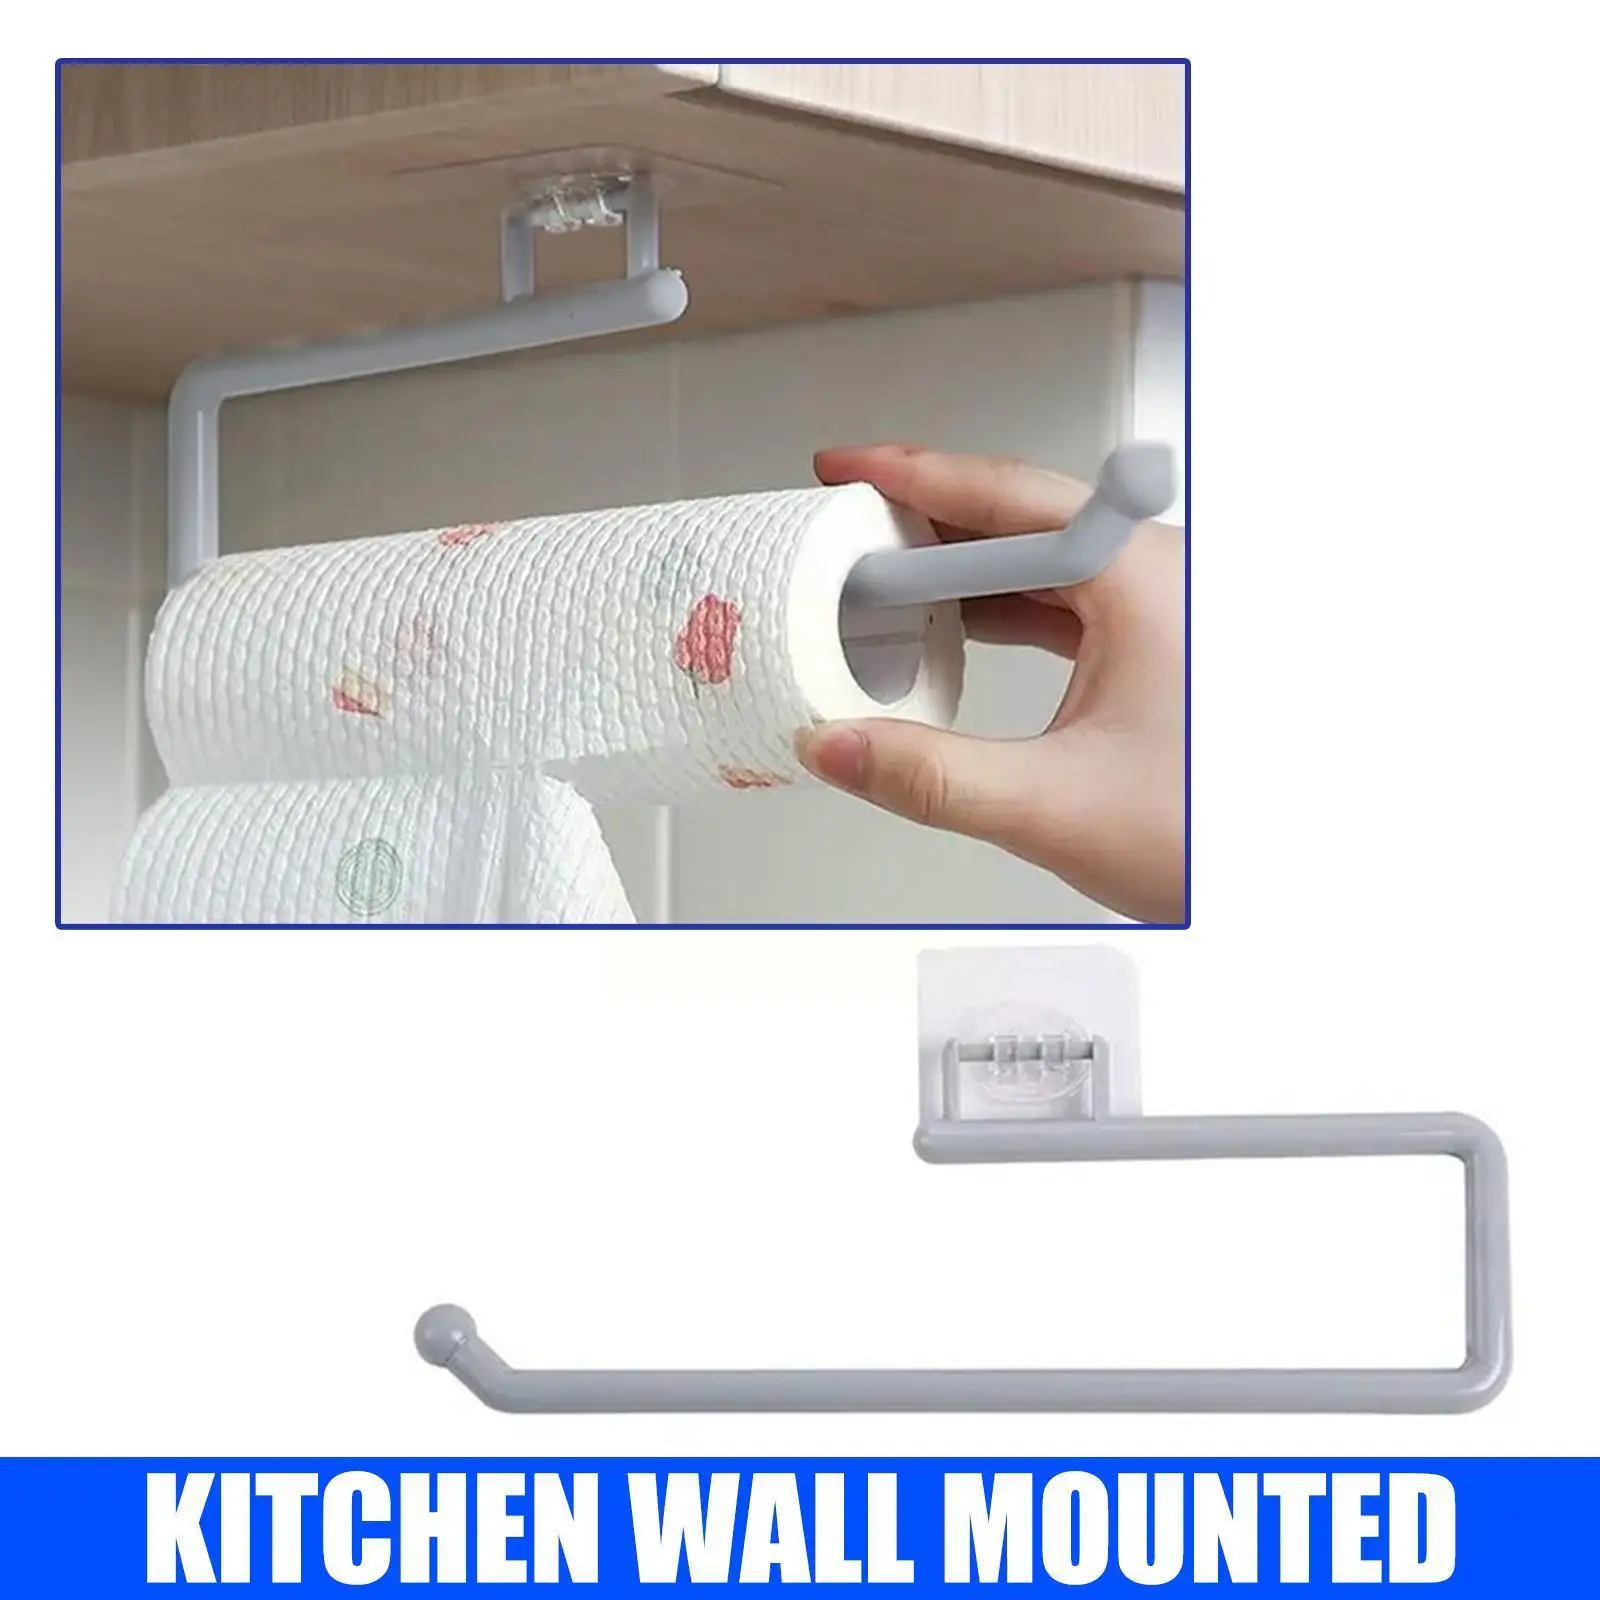 

Вешалка для бумажных рулонов настенная вешалка для хранения полотенец для кухни ванной комнаты Крючок для хранения Бар шкафа тряпичная вешалка H U5B3